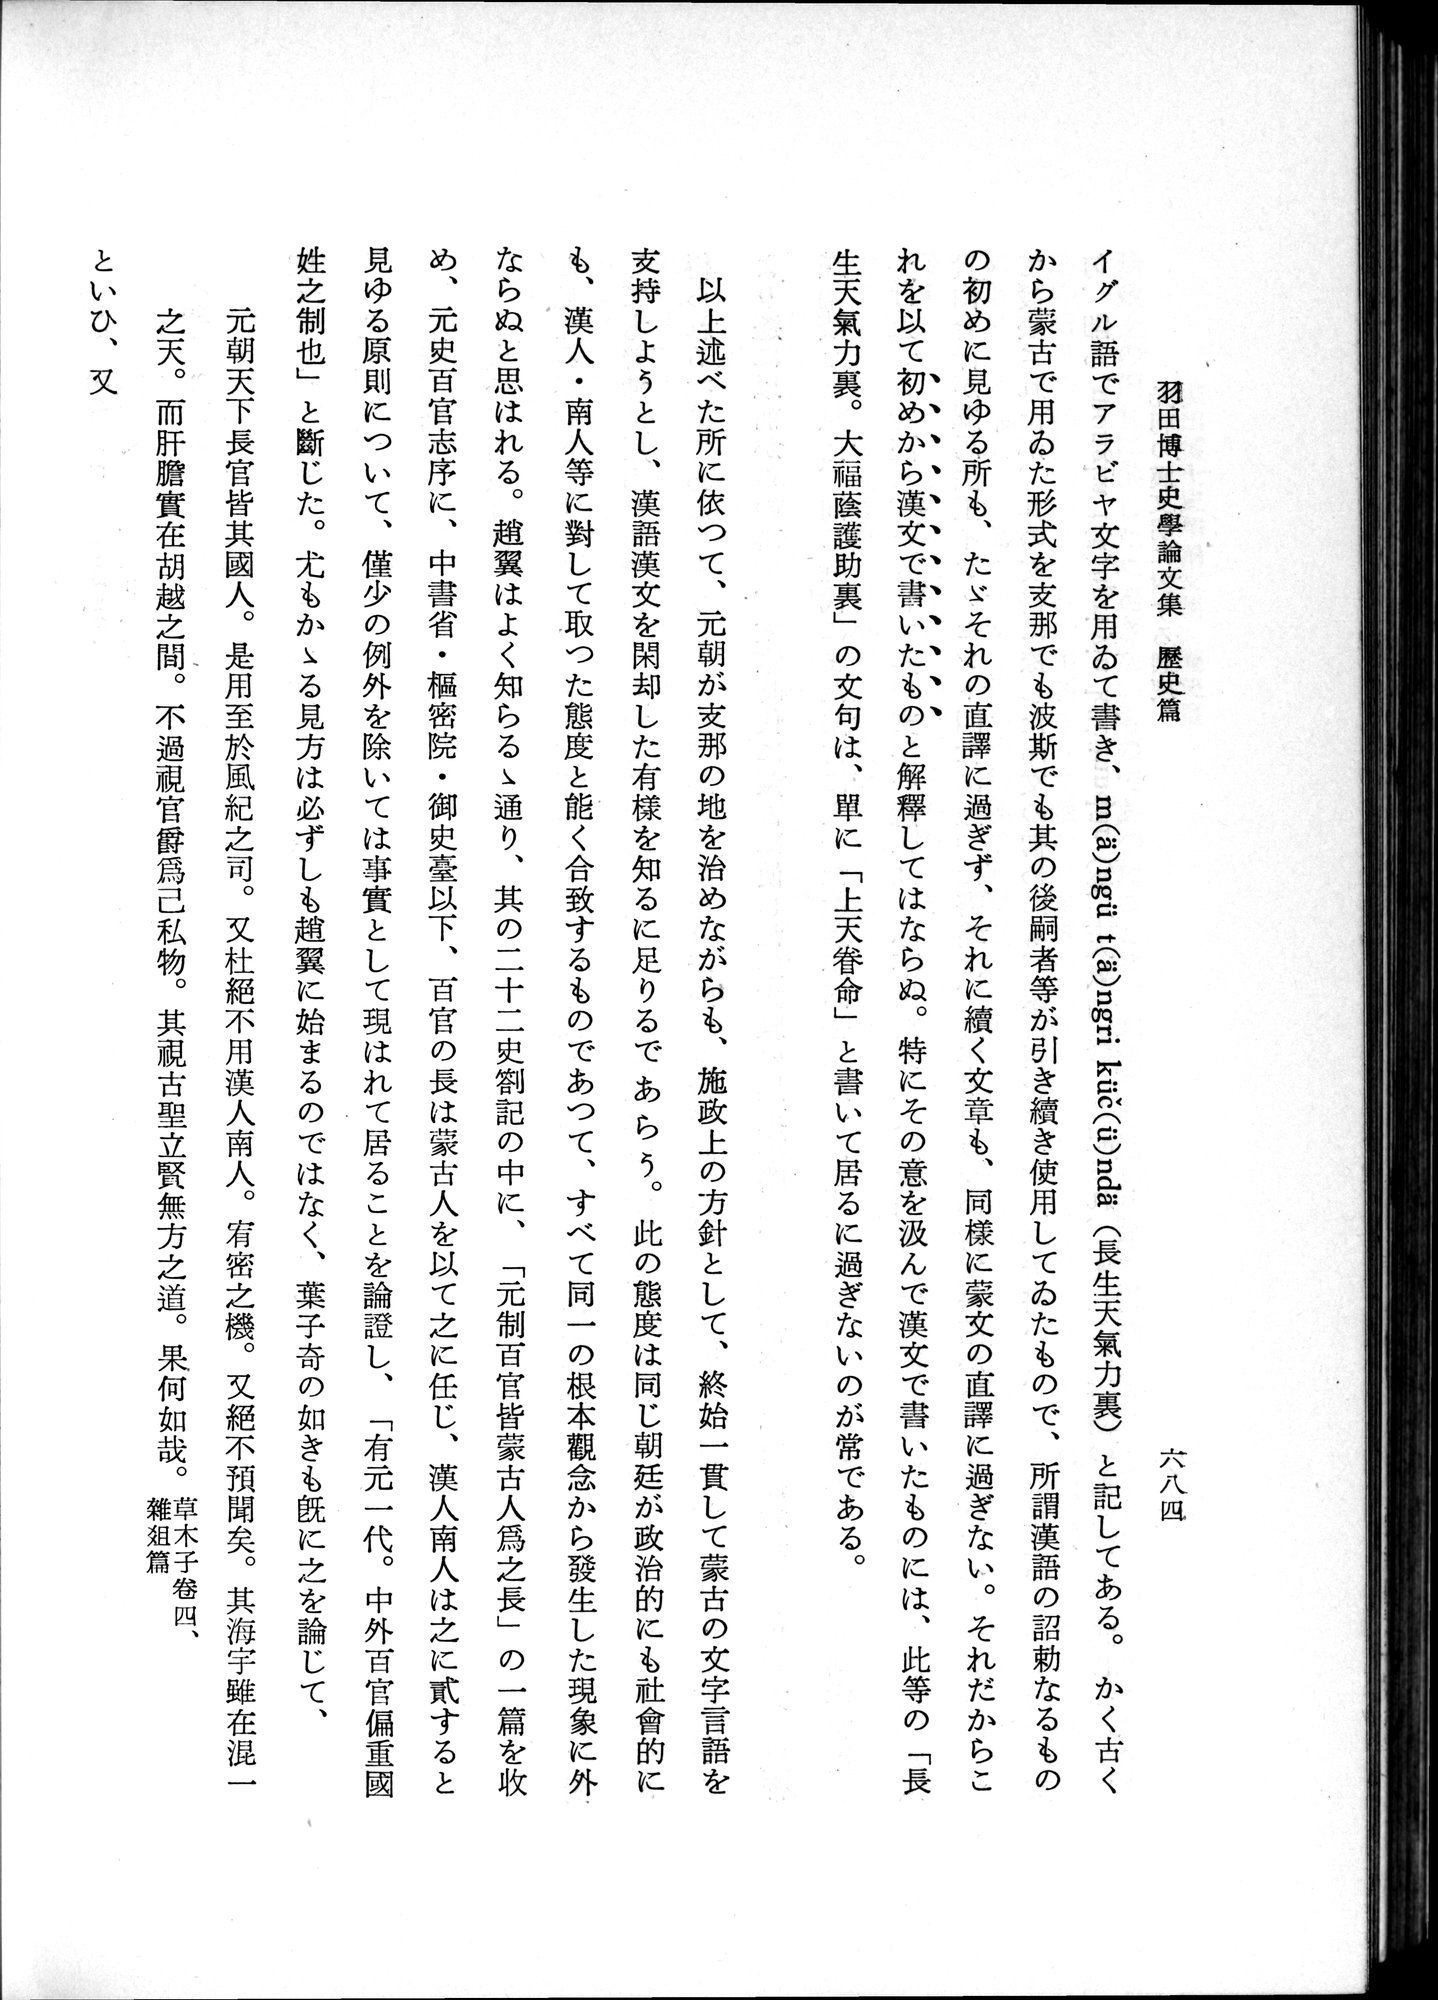 羽田博士史学論文集 : vol.1 / Page 722 (Grayscale High Resolution Image)